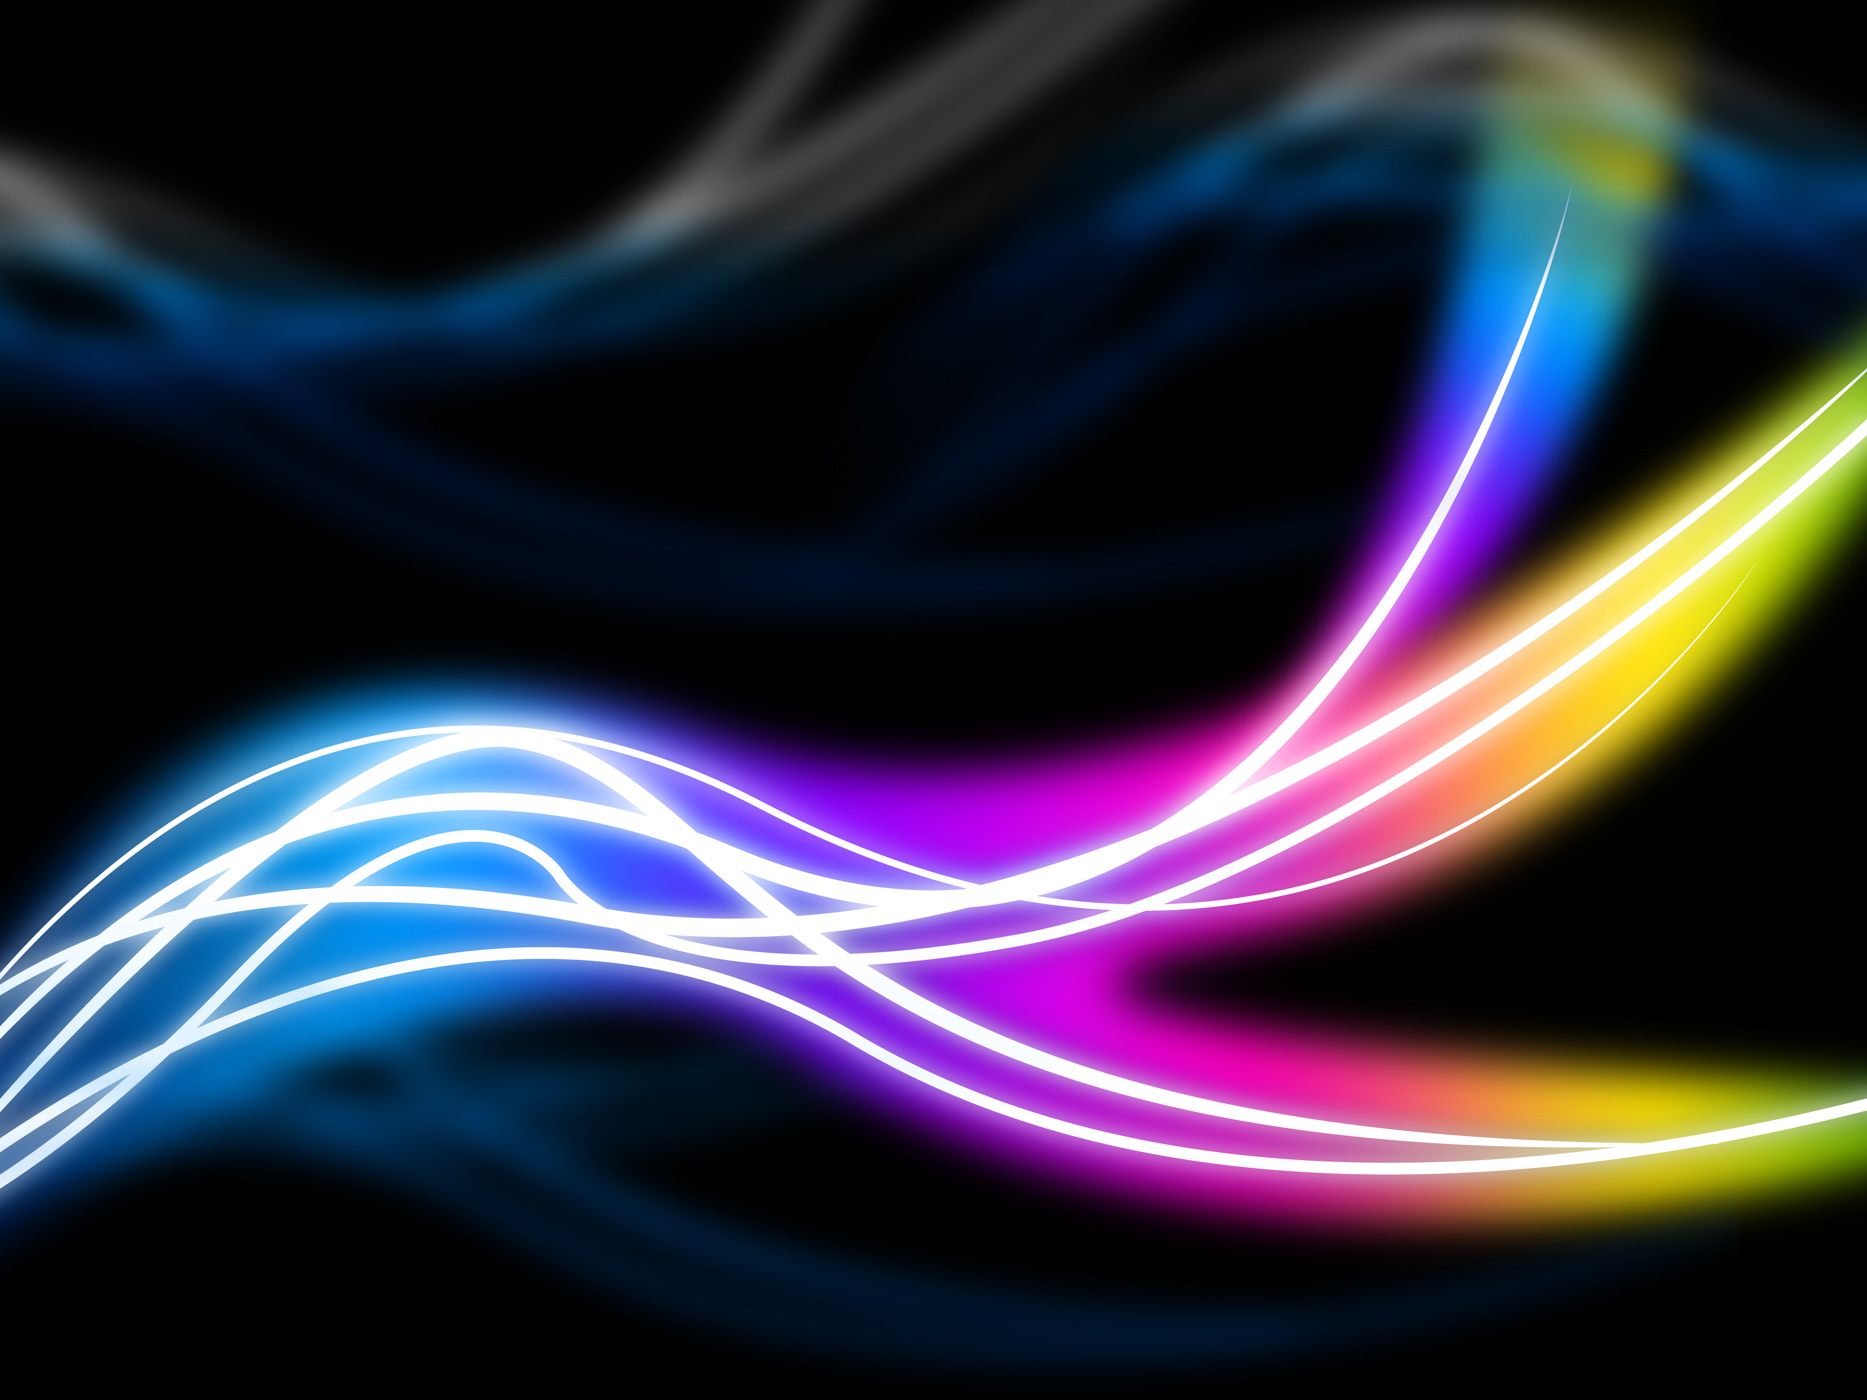 Flourescent swirls background shows colorful pattern in dark photo